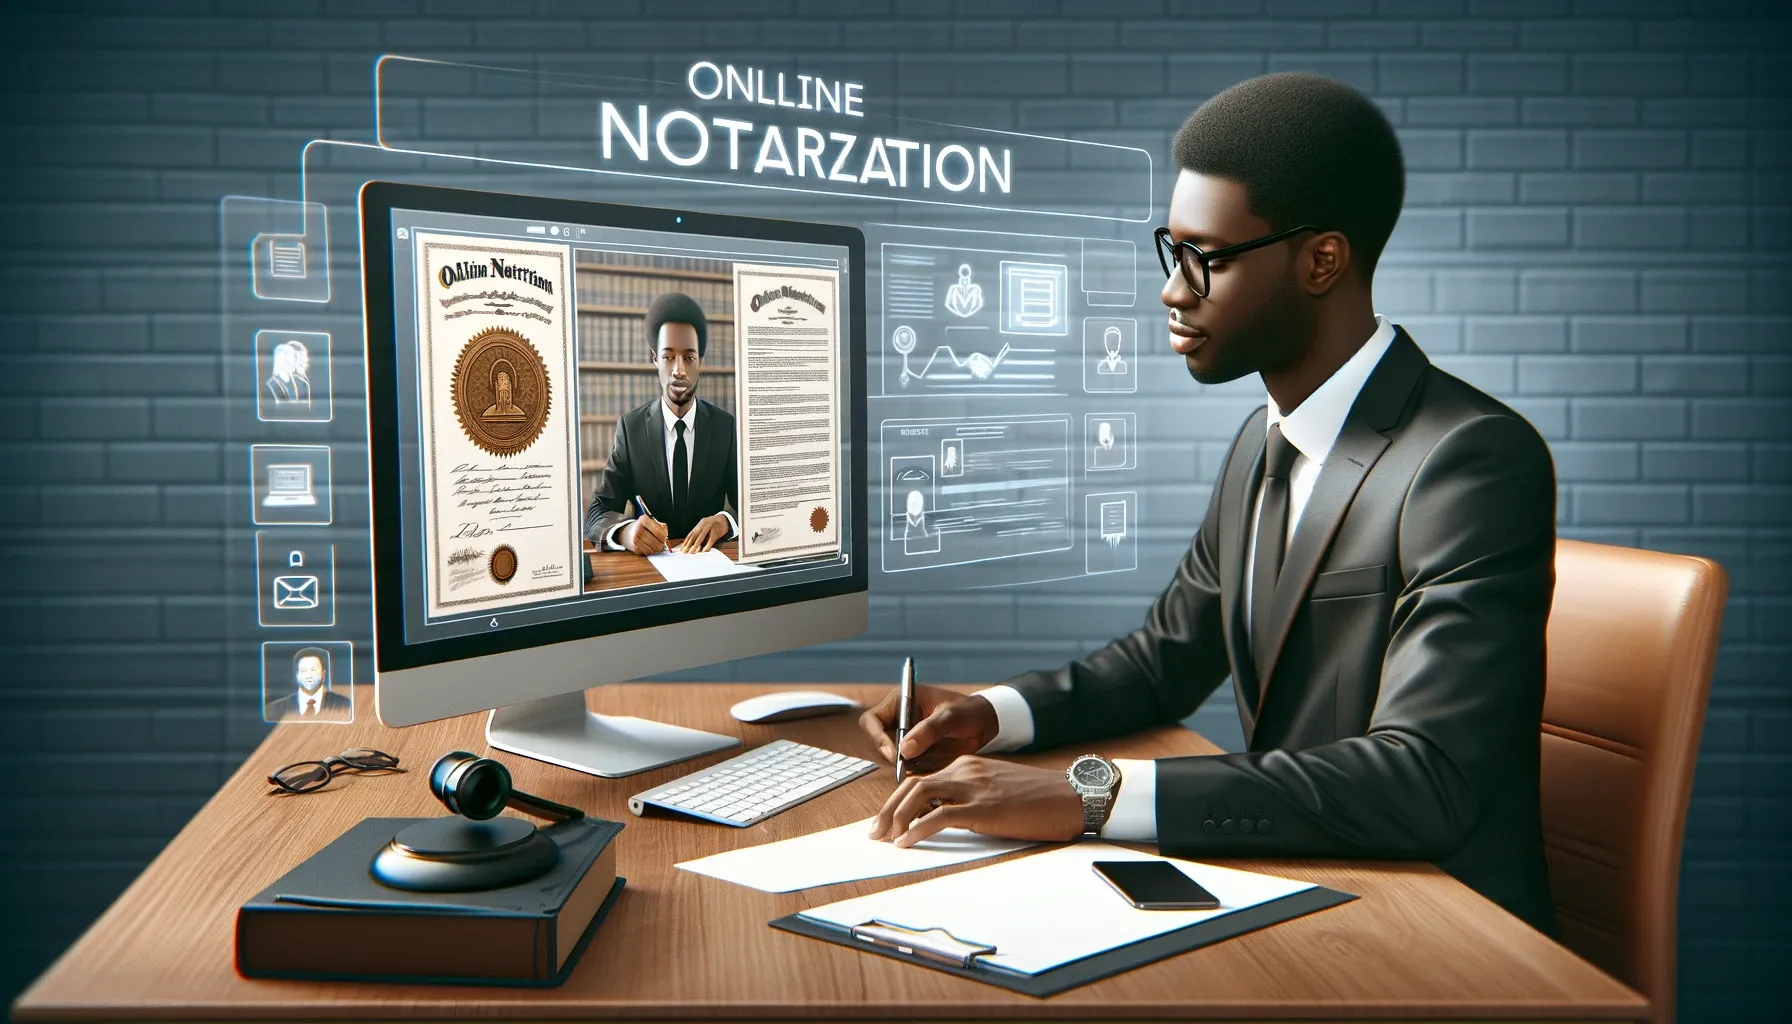 Online Notarization